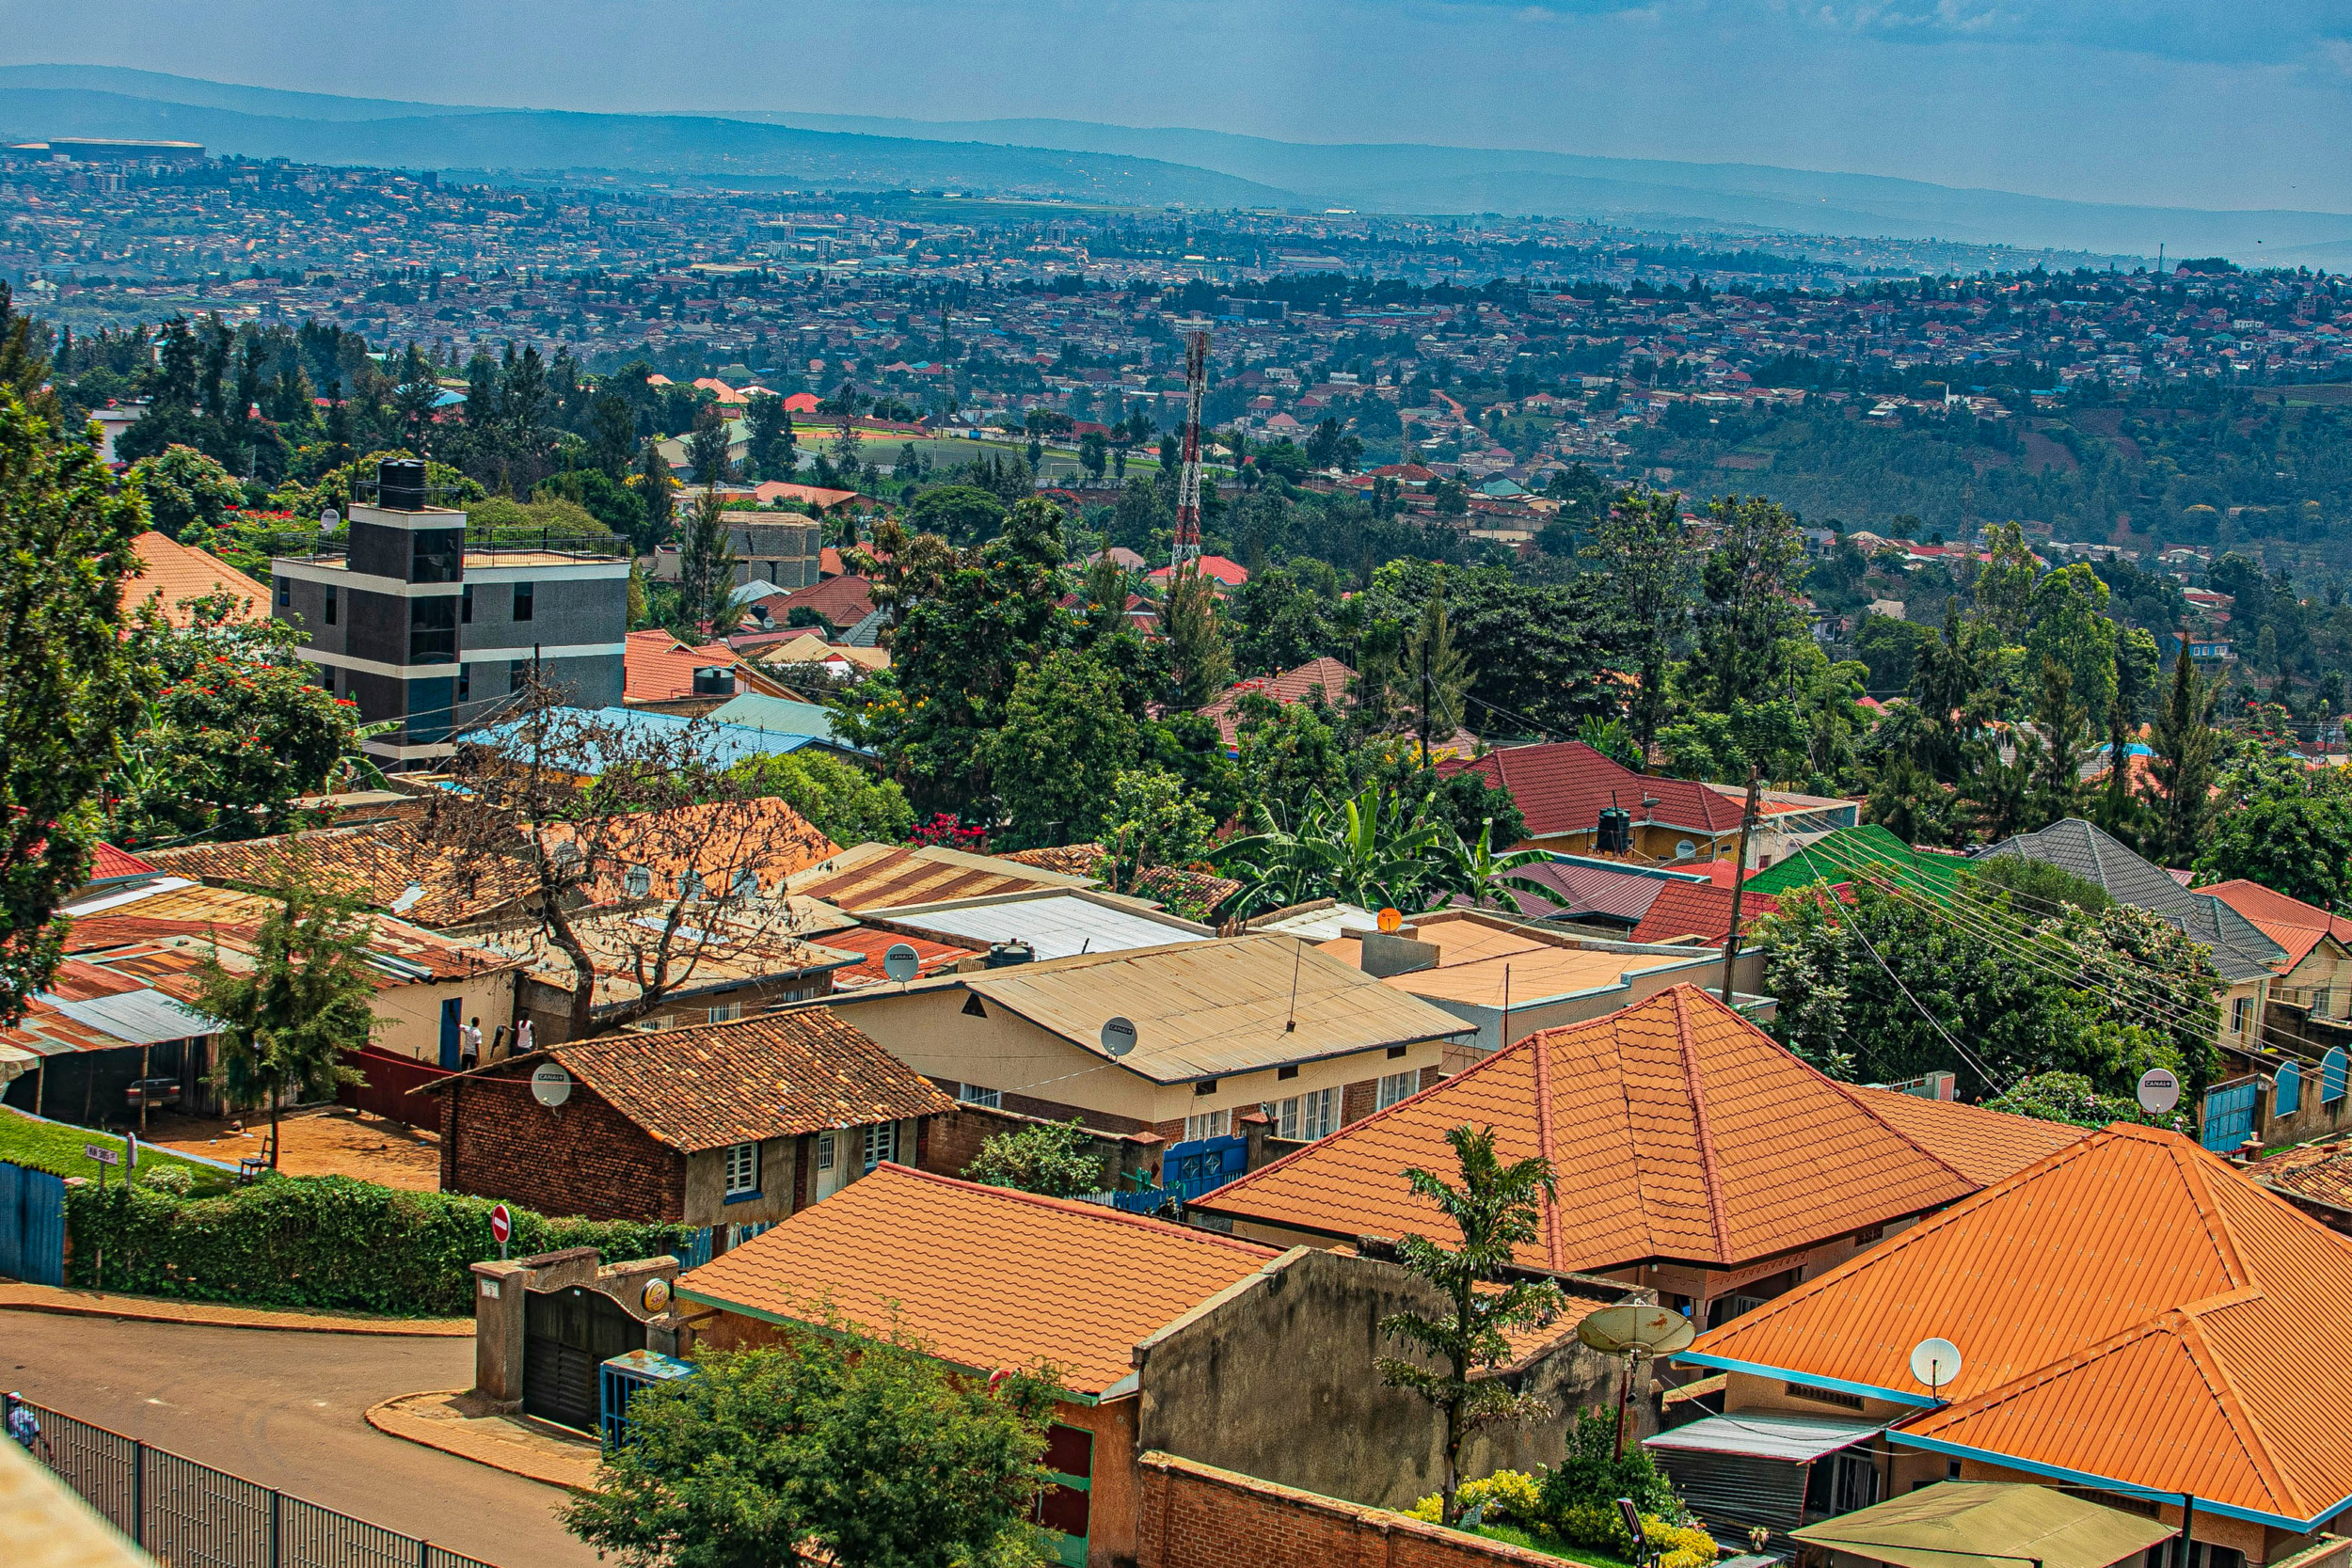 Der Blick über das Häusermeer in Kigali ist definitiv beeindruckend